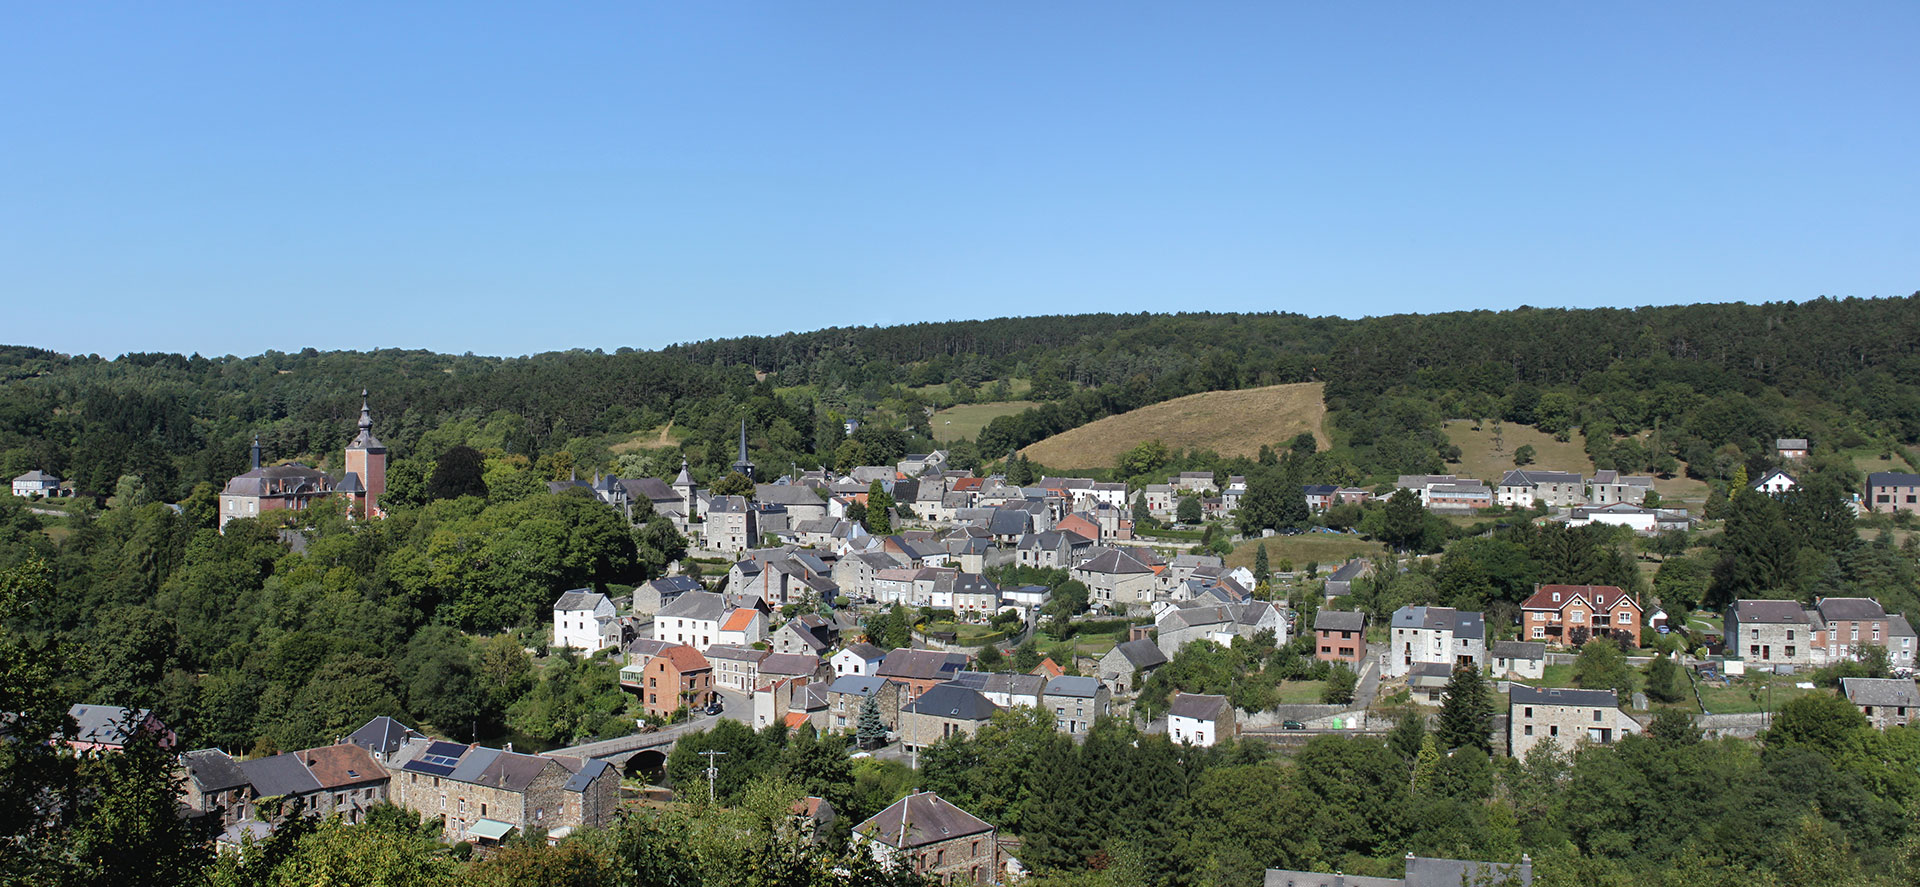 Les plus beaux villages de Wallonie - Vierves - clocher - panorama - ciel bleu - vielles maisons